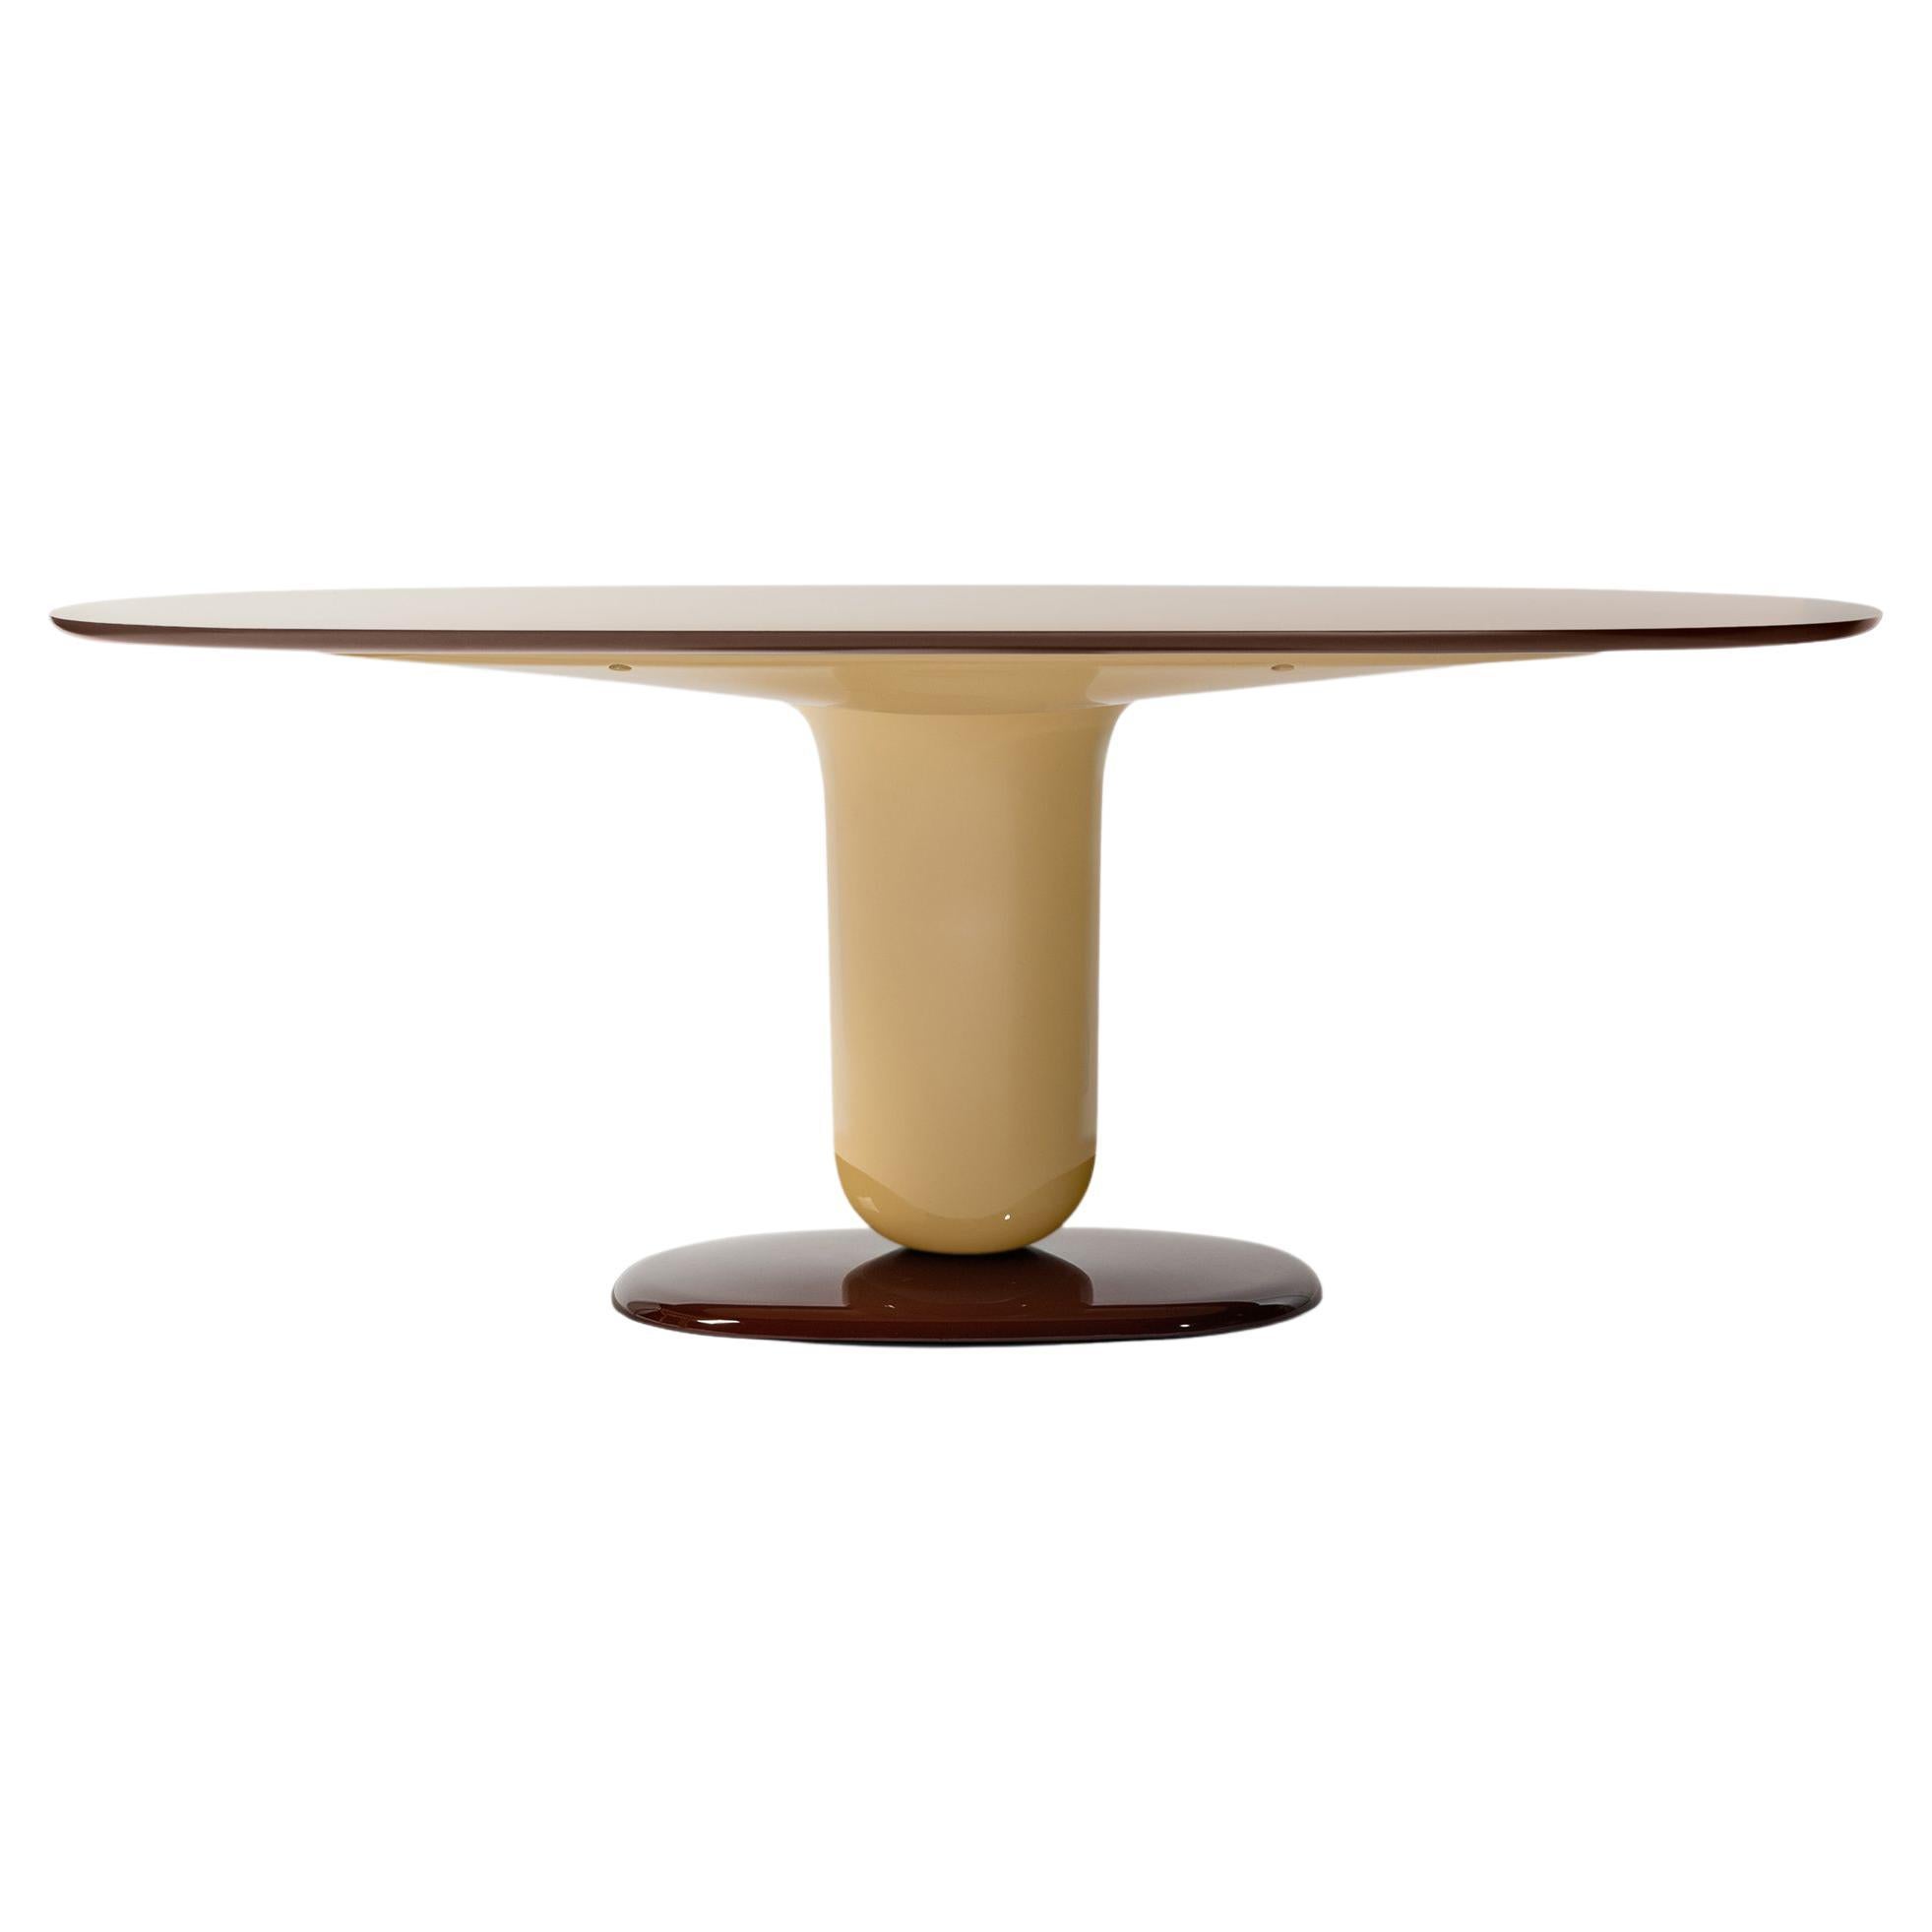 Der von Jaime Hayon im Jahr 2021 entworfene Tisch ergänzt die Explorer-Kollektion, die 2019 eingeführt wurde.
Hergestellt von BD Barcelona in Spanien.

Als Fortsetzung der verspielten Explorer Tischserie und in Anlehnung an ihre elegante Schönheit